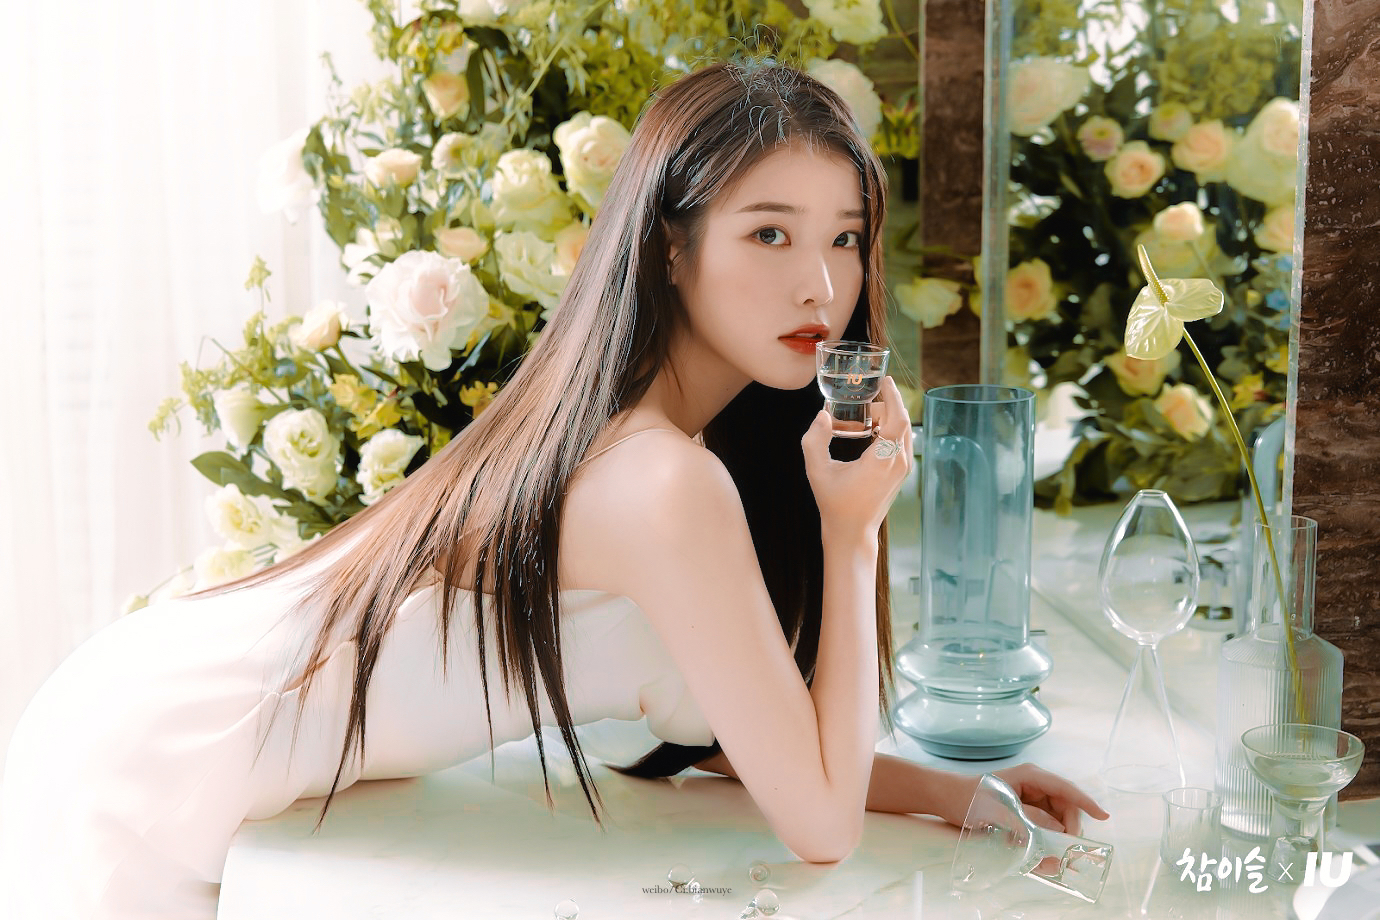 IU Iu Lee Ji Eun Long Hair Red Lipstick Asian Women Makeup Looking At Viewer Wallpaper - Resolution:1380x920 - ID:1171207 - wallha.com